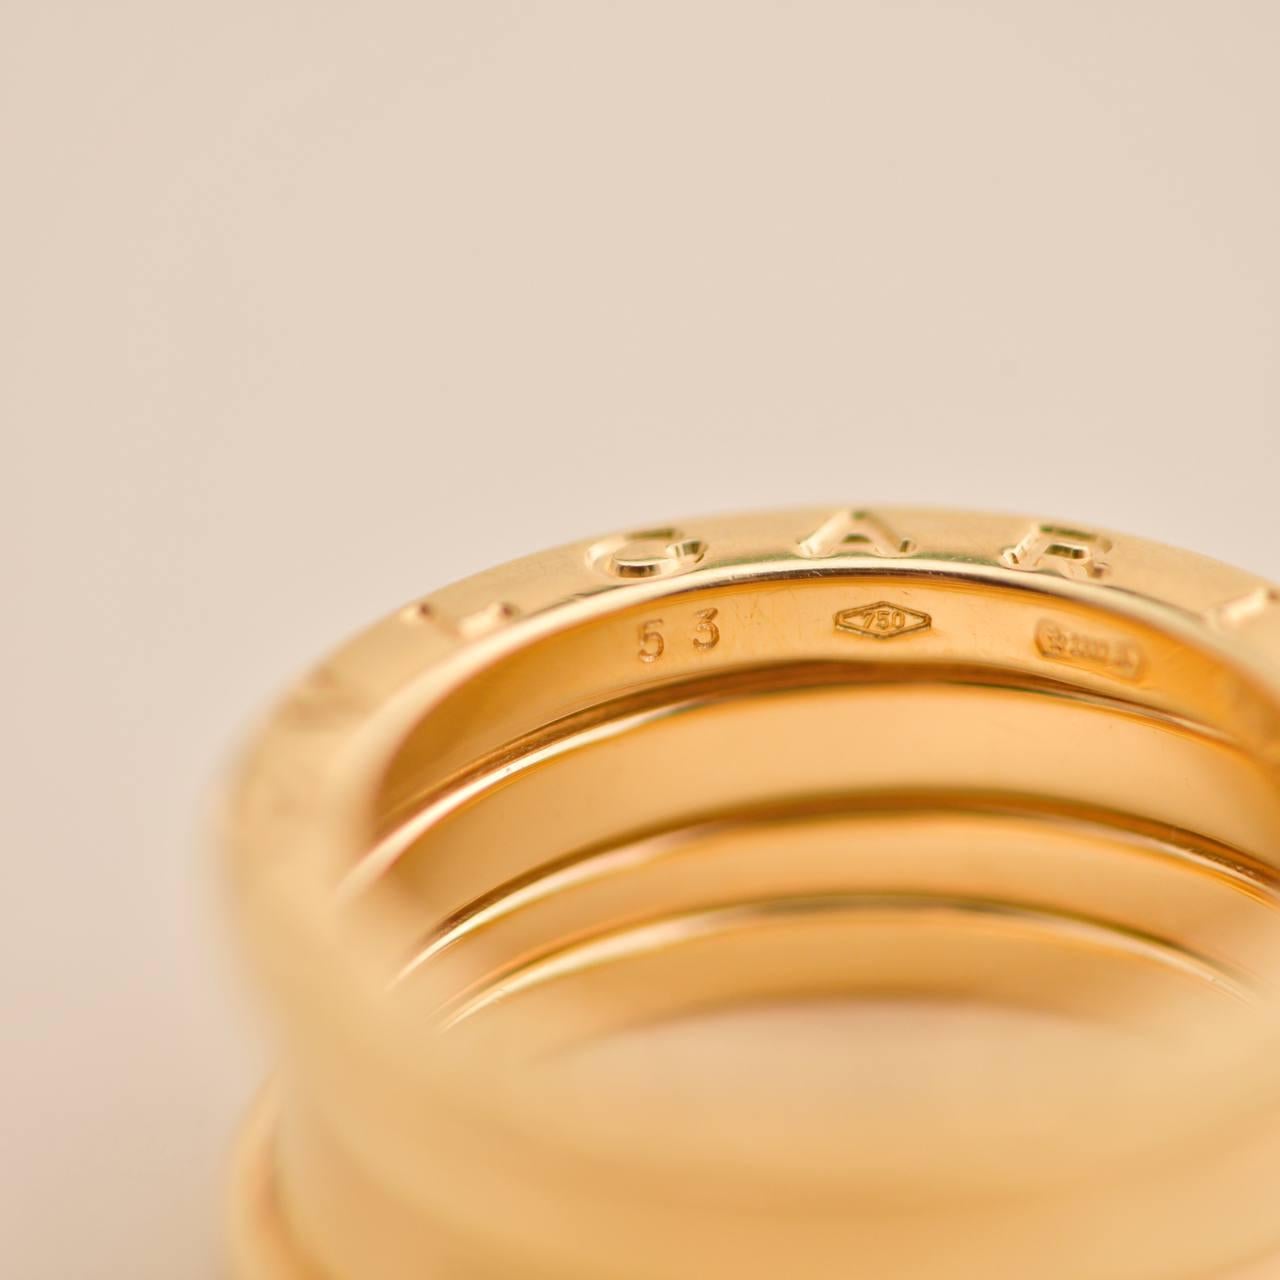 Bulgari B.Zero1 large Yellow Gold Ring Size 53 2